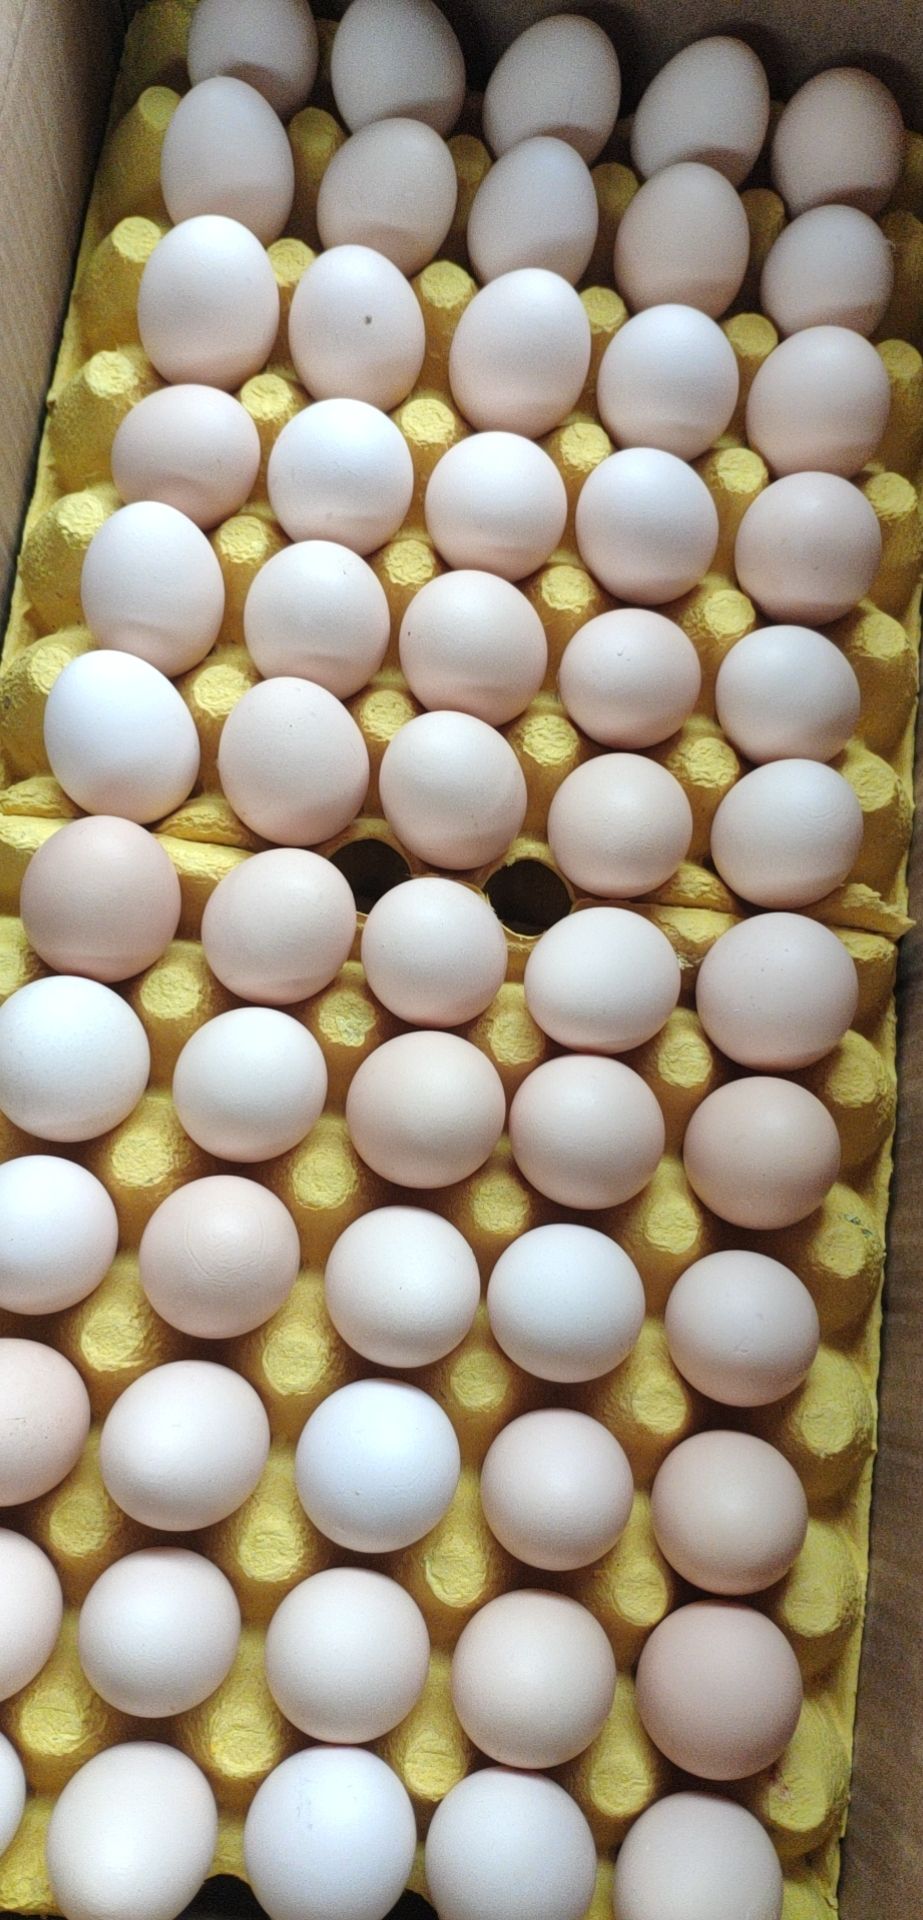 [粉壳蛋批发]土鸡蛋草鸡蛋价格45元/斤 